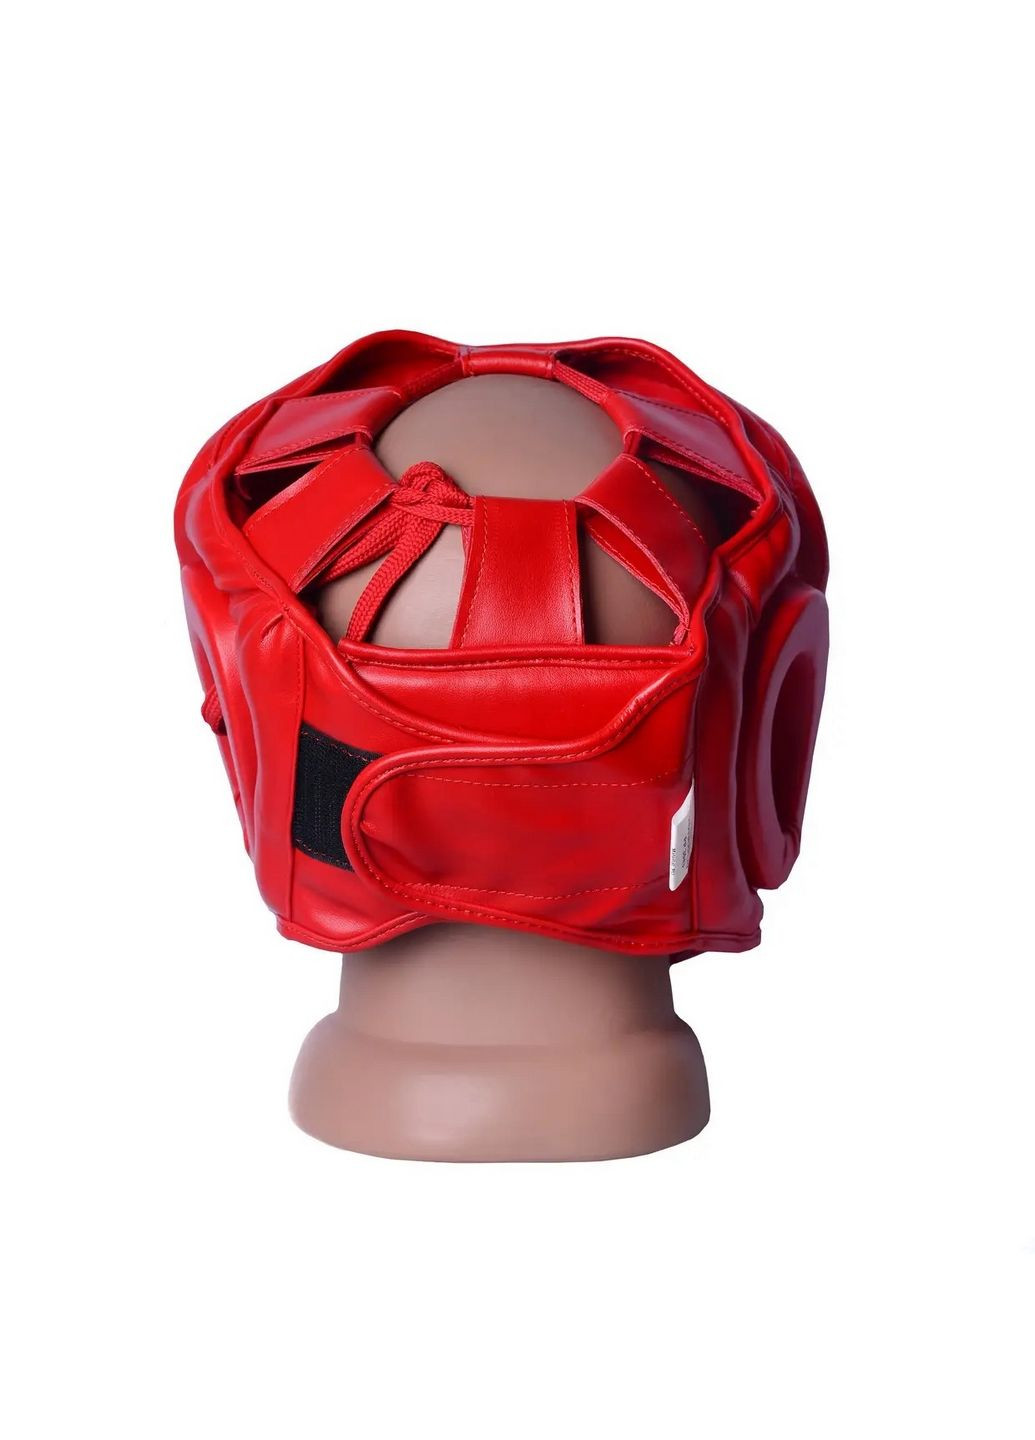 Боксерский шлем 3043 (тренировочный) PowerPlay (293417435)